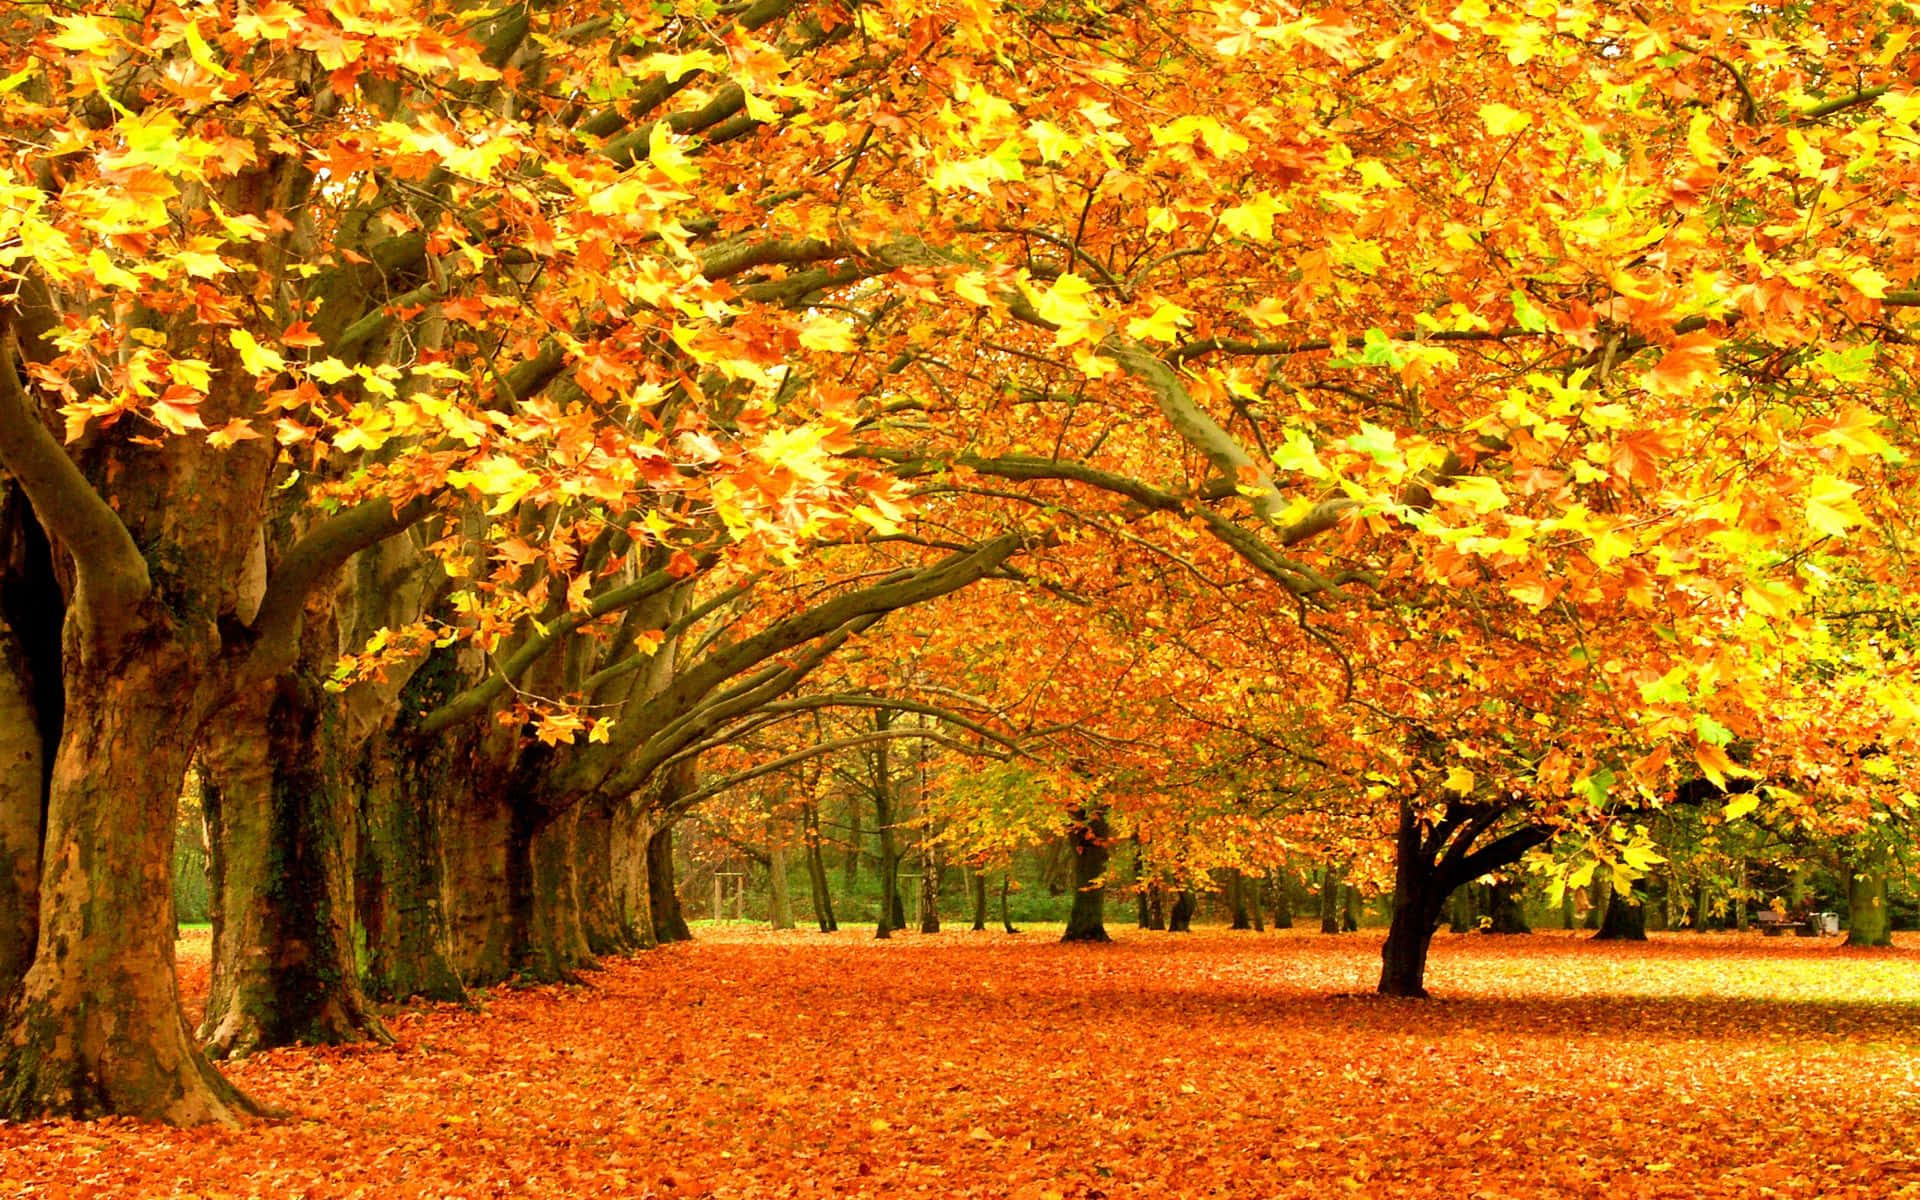 Enjoy the beautiful hues of Fall